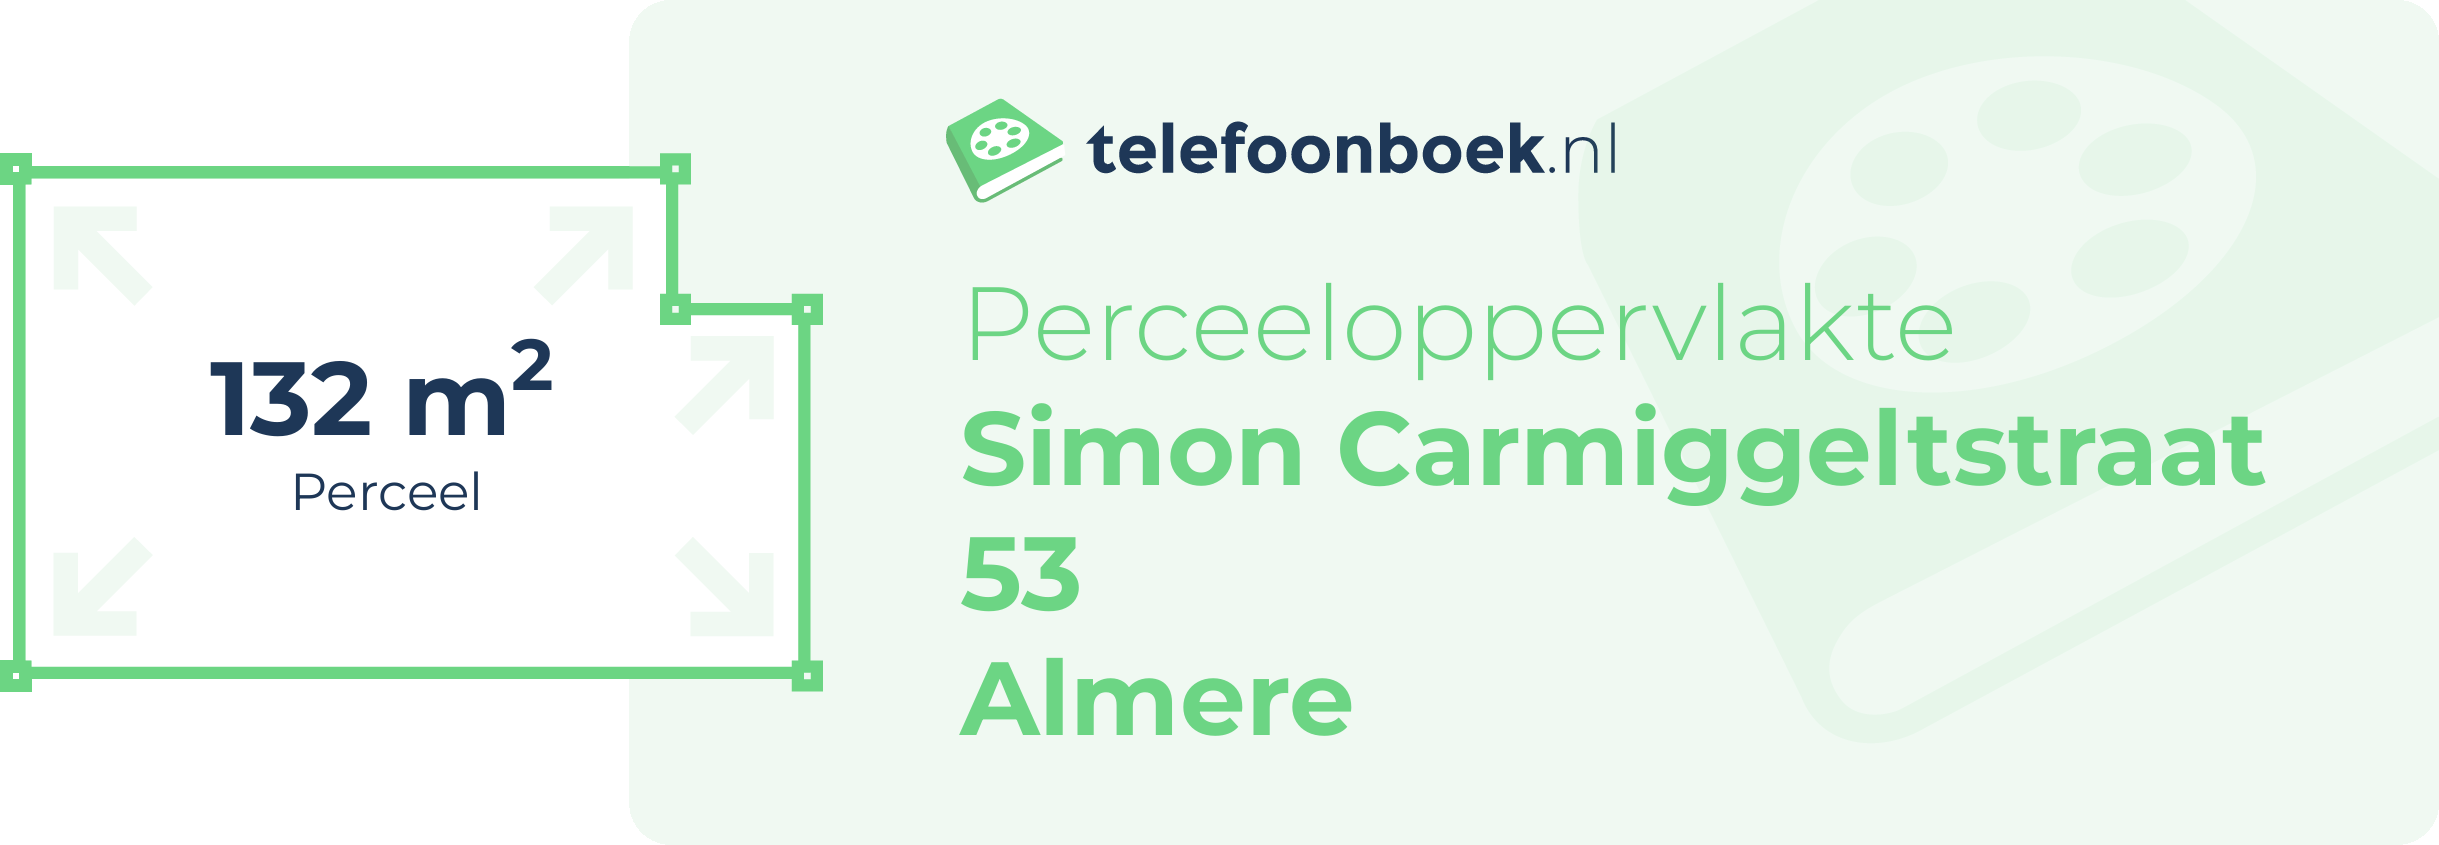 Perceeloppervlakte Simon Carmiggeltstraat 53 Almere